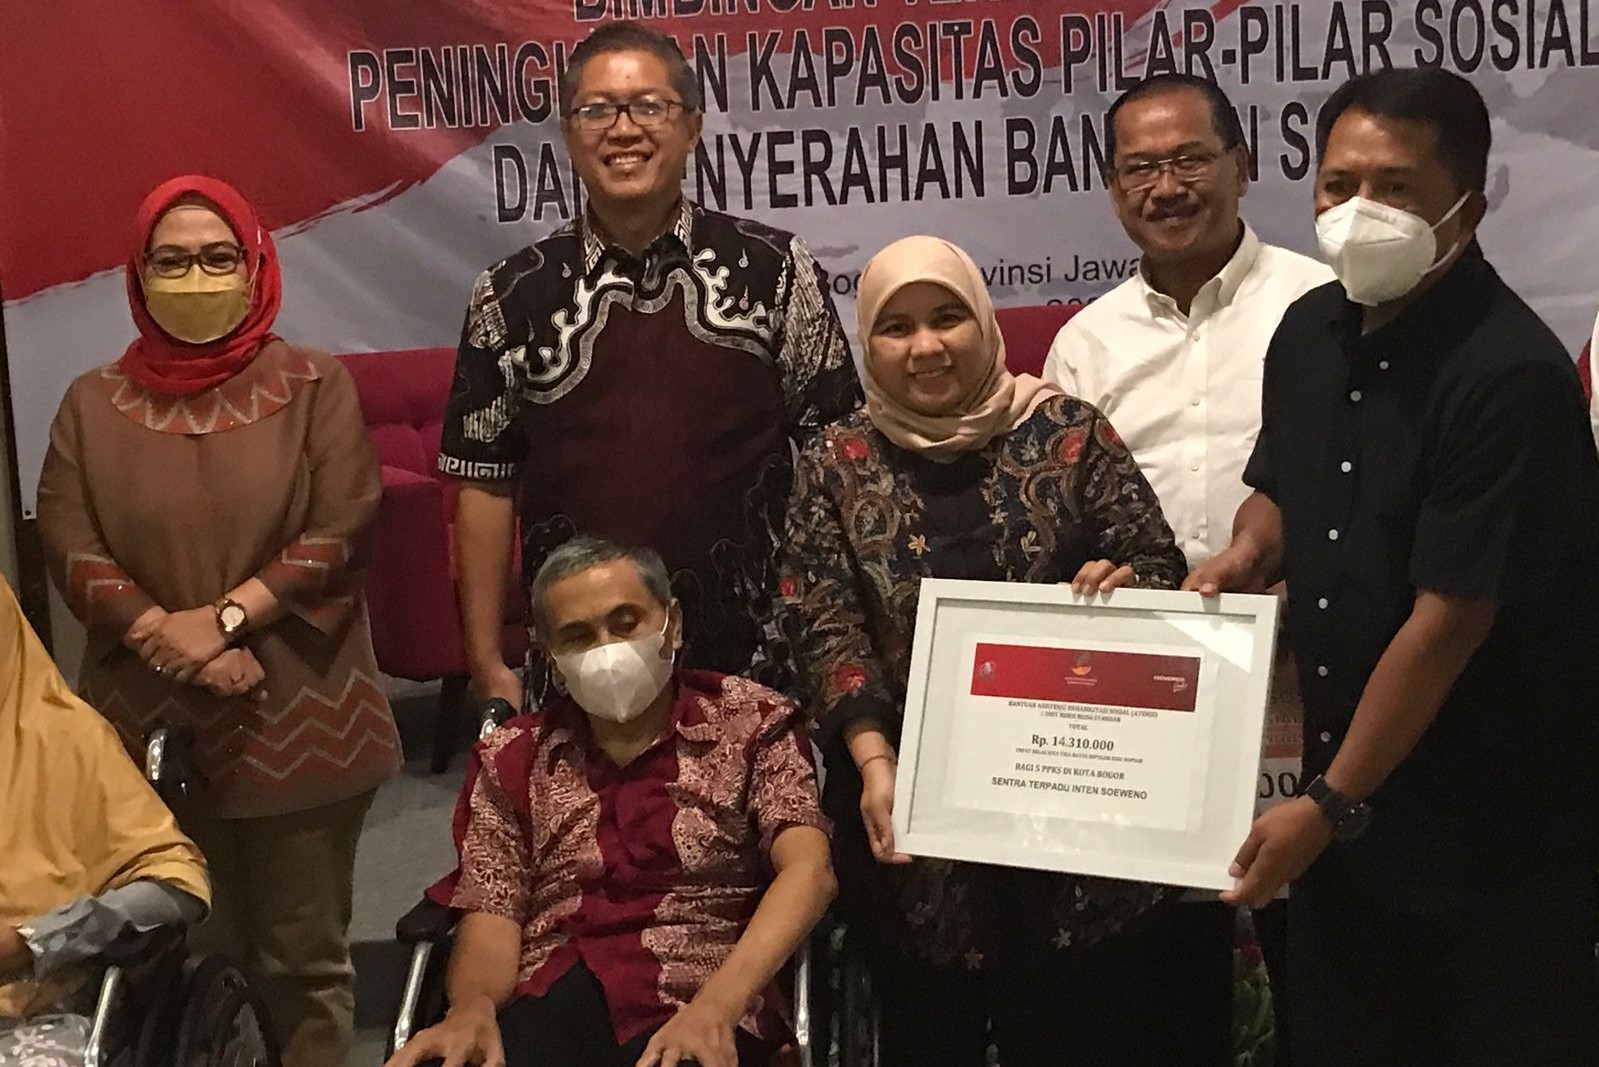 Lima Tahun Berjalan dengan Tongkat, Lansia di Kota Bogor Sangat Terbantu Terima Kursi Roda dari Kemensos